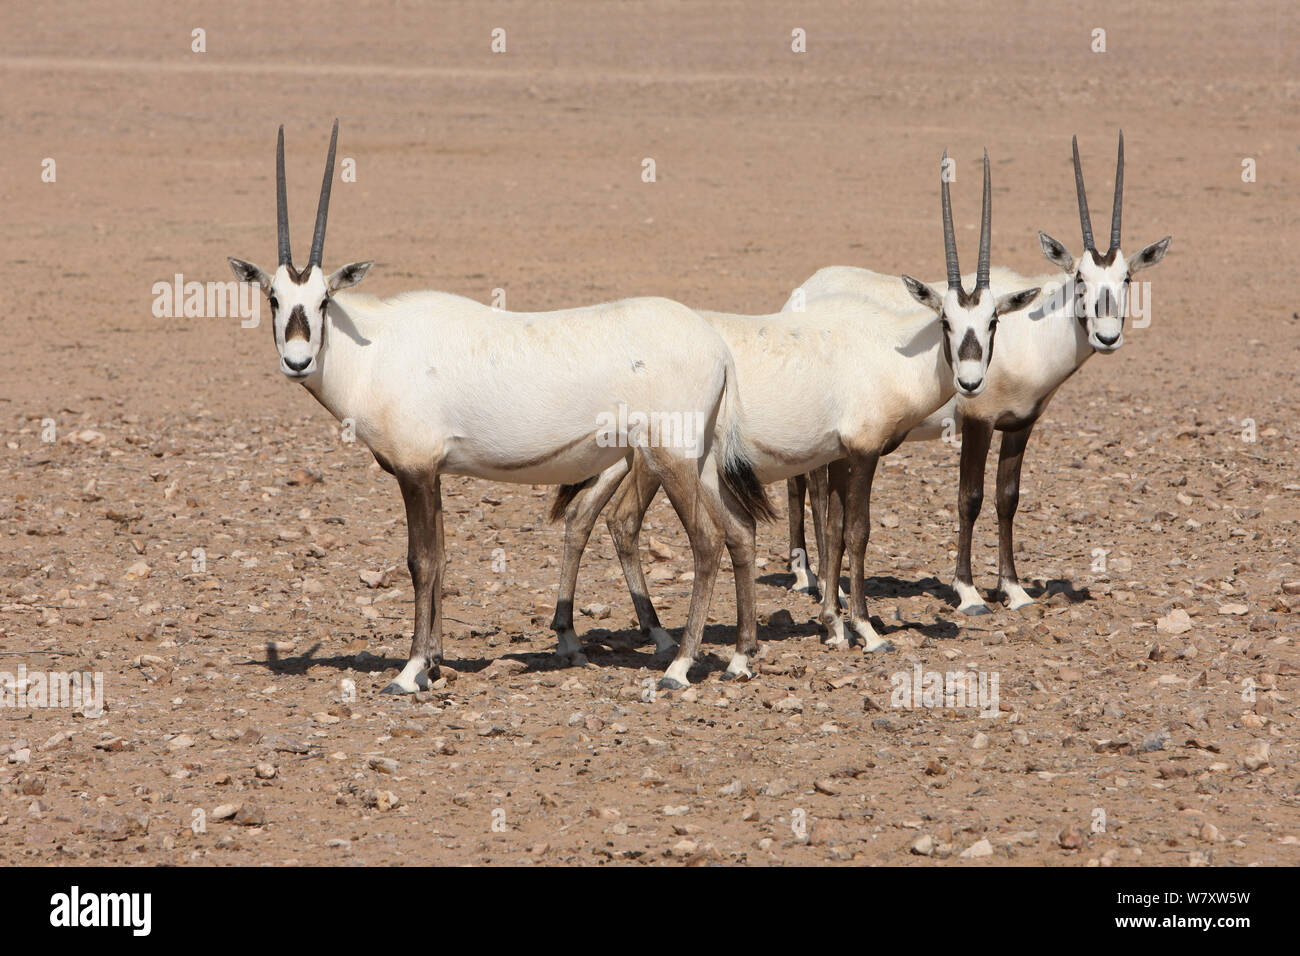 Oryx d'arabie (Oryx leucoryx) plaine de gravier sur trois, d'Oman, novembre. Pris dans les grande enceinte à l'intérieur de la zone protégée. Banque D'Images